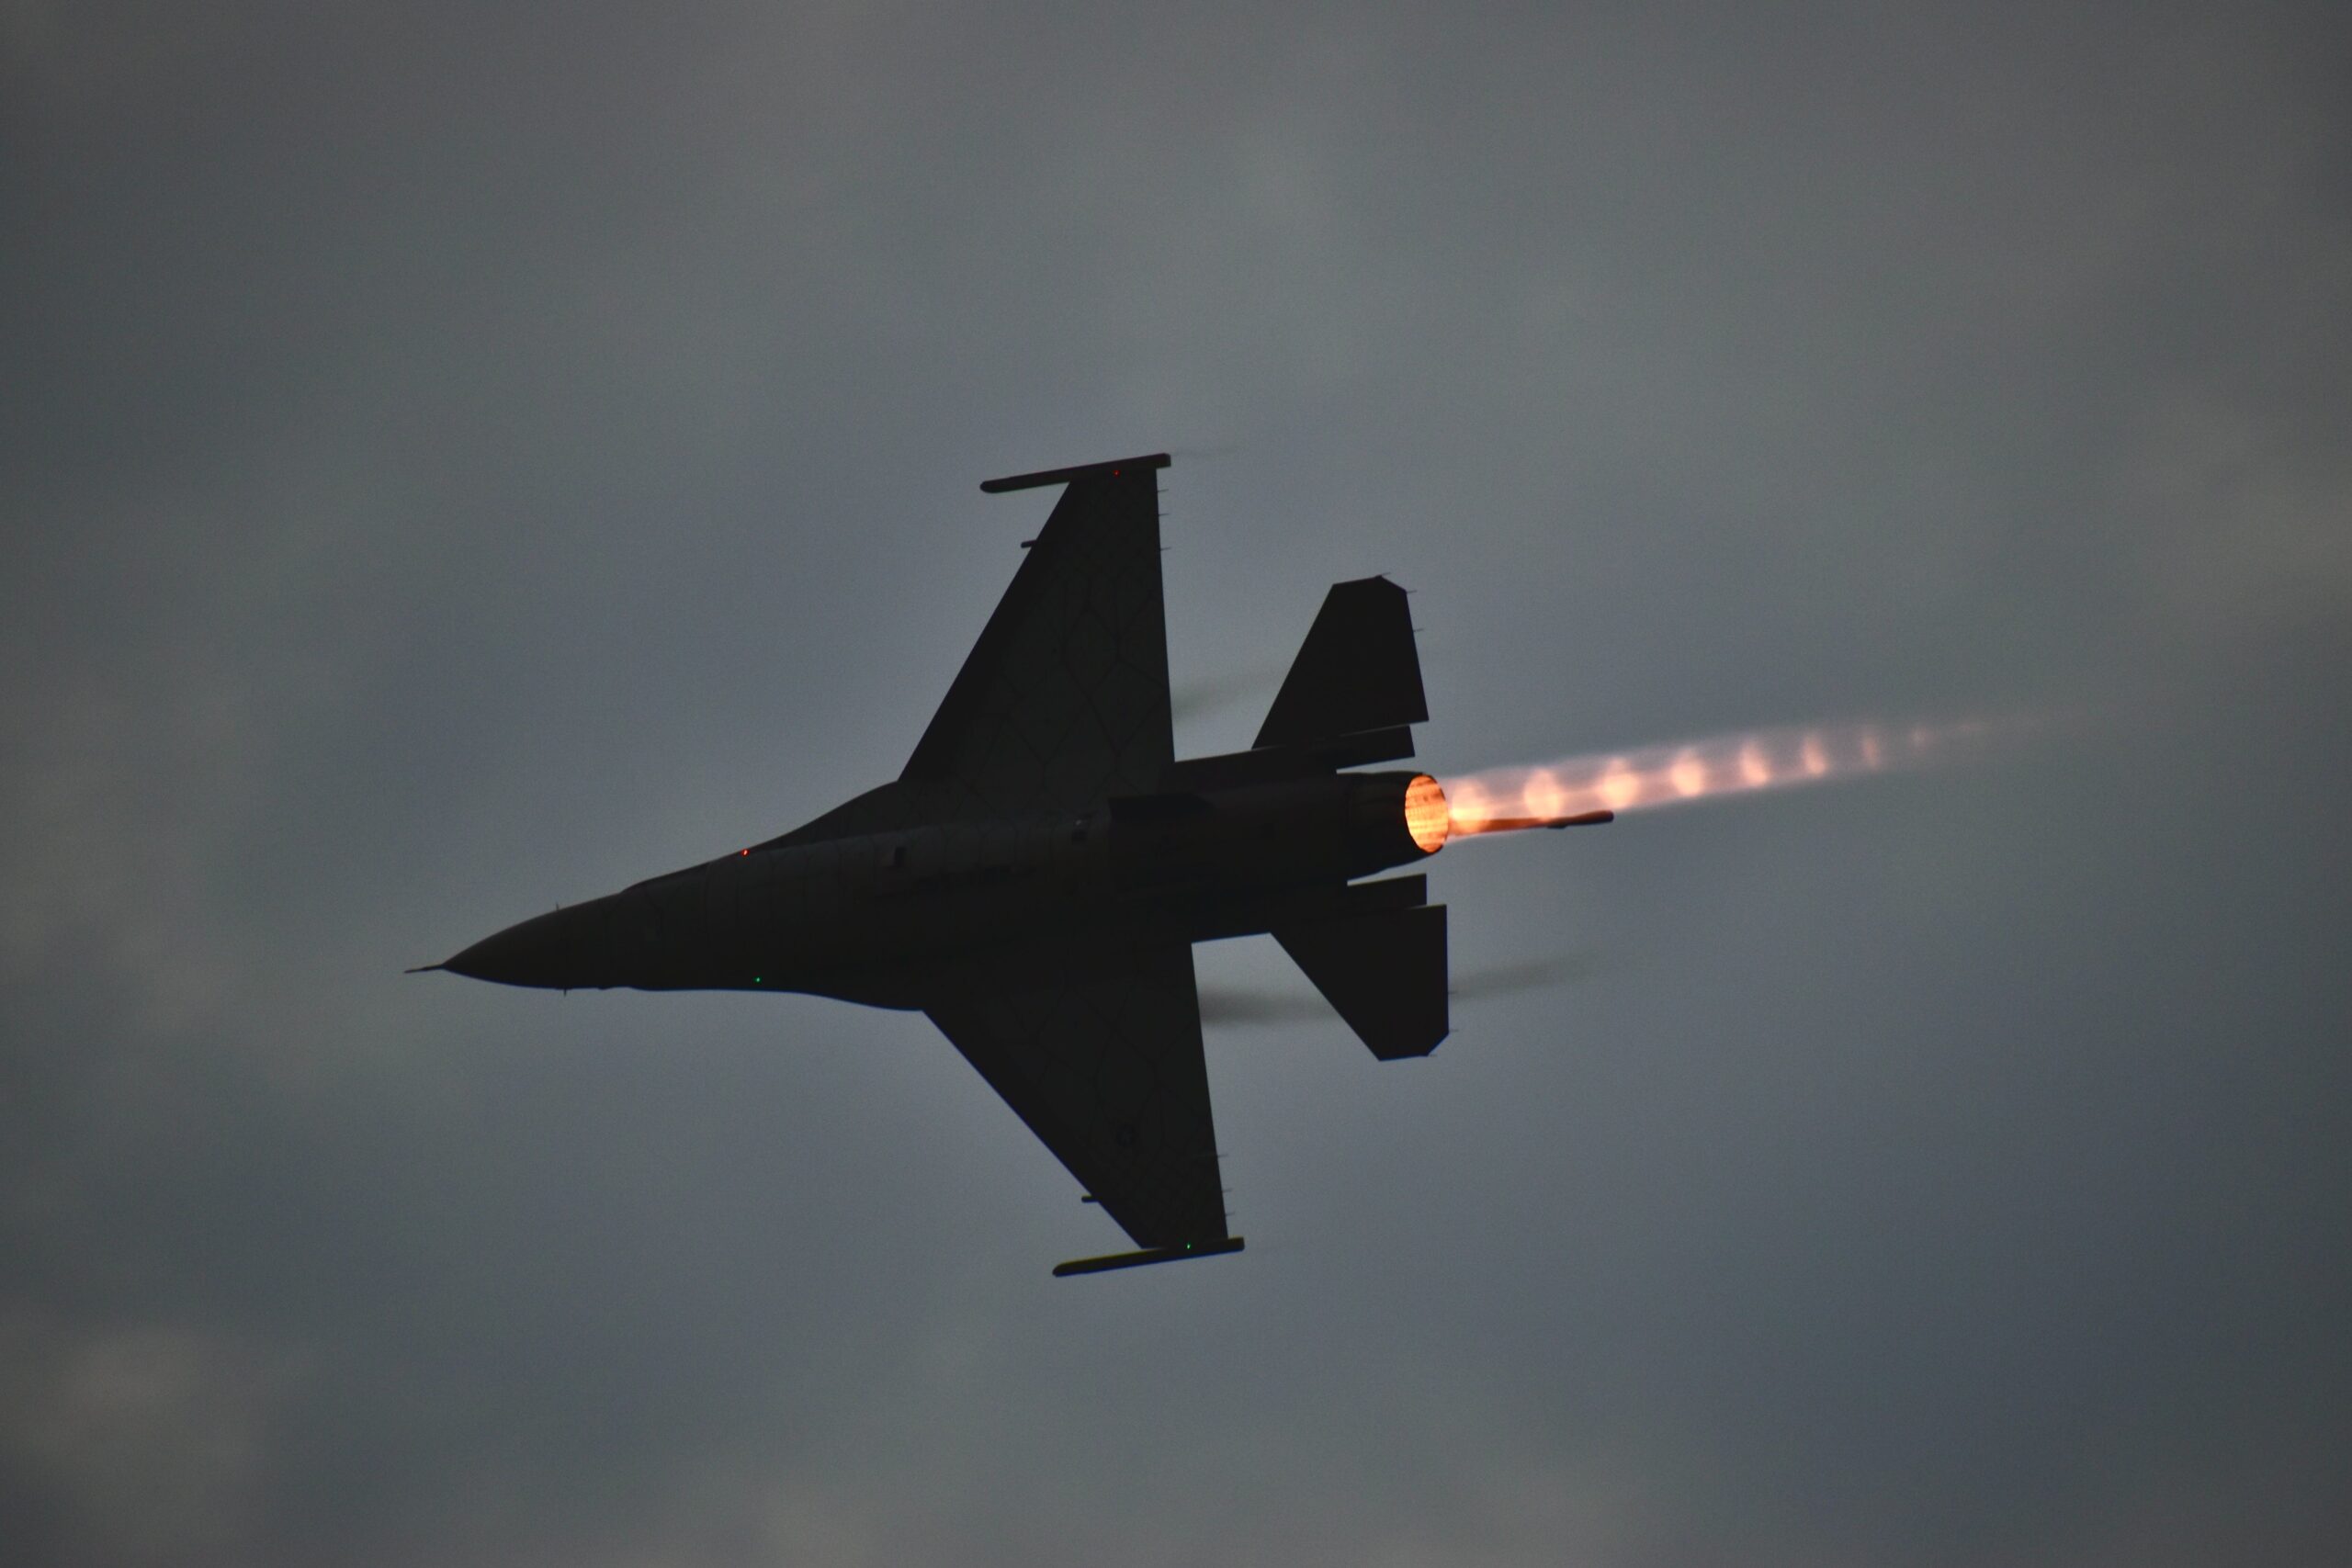 Δημήτρης Μάντζος: Εγγυήσεις ότι τα F-16 δεν θα χρησιμοποιηθούν κατά της Ελλάδας – Ανοιχτά πανεπιστήμια και διάλογος